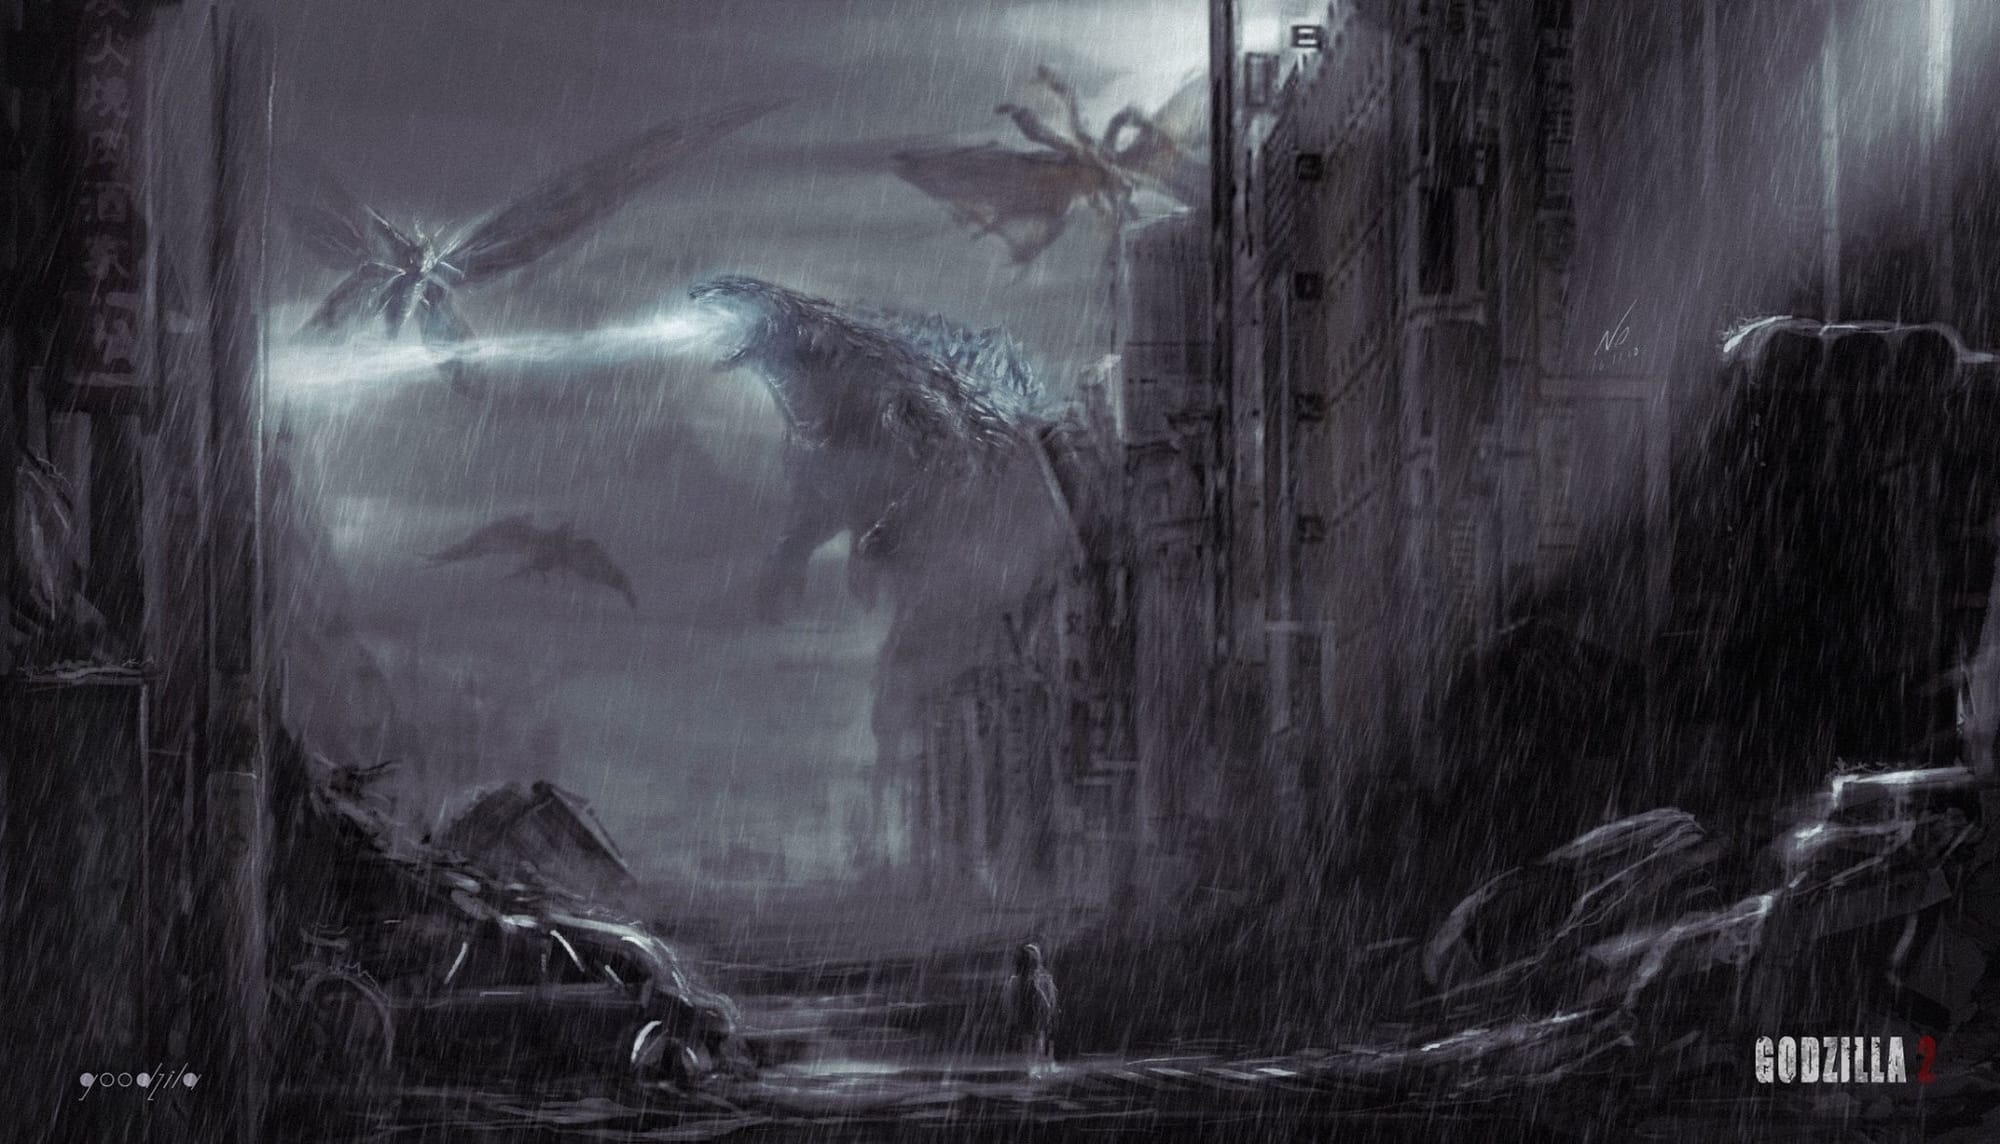 Artist's rendering of Godzilla.